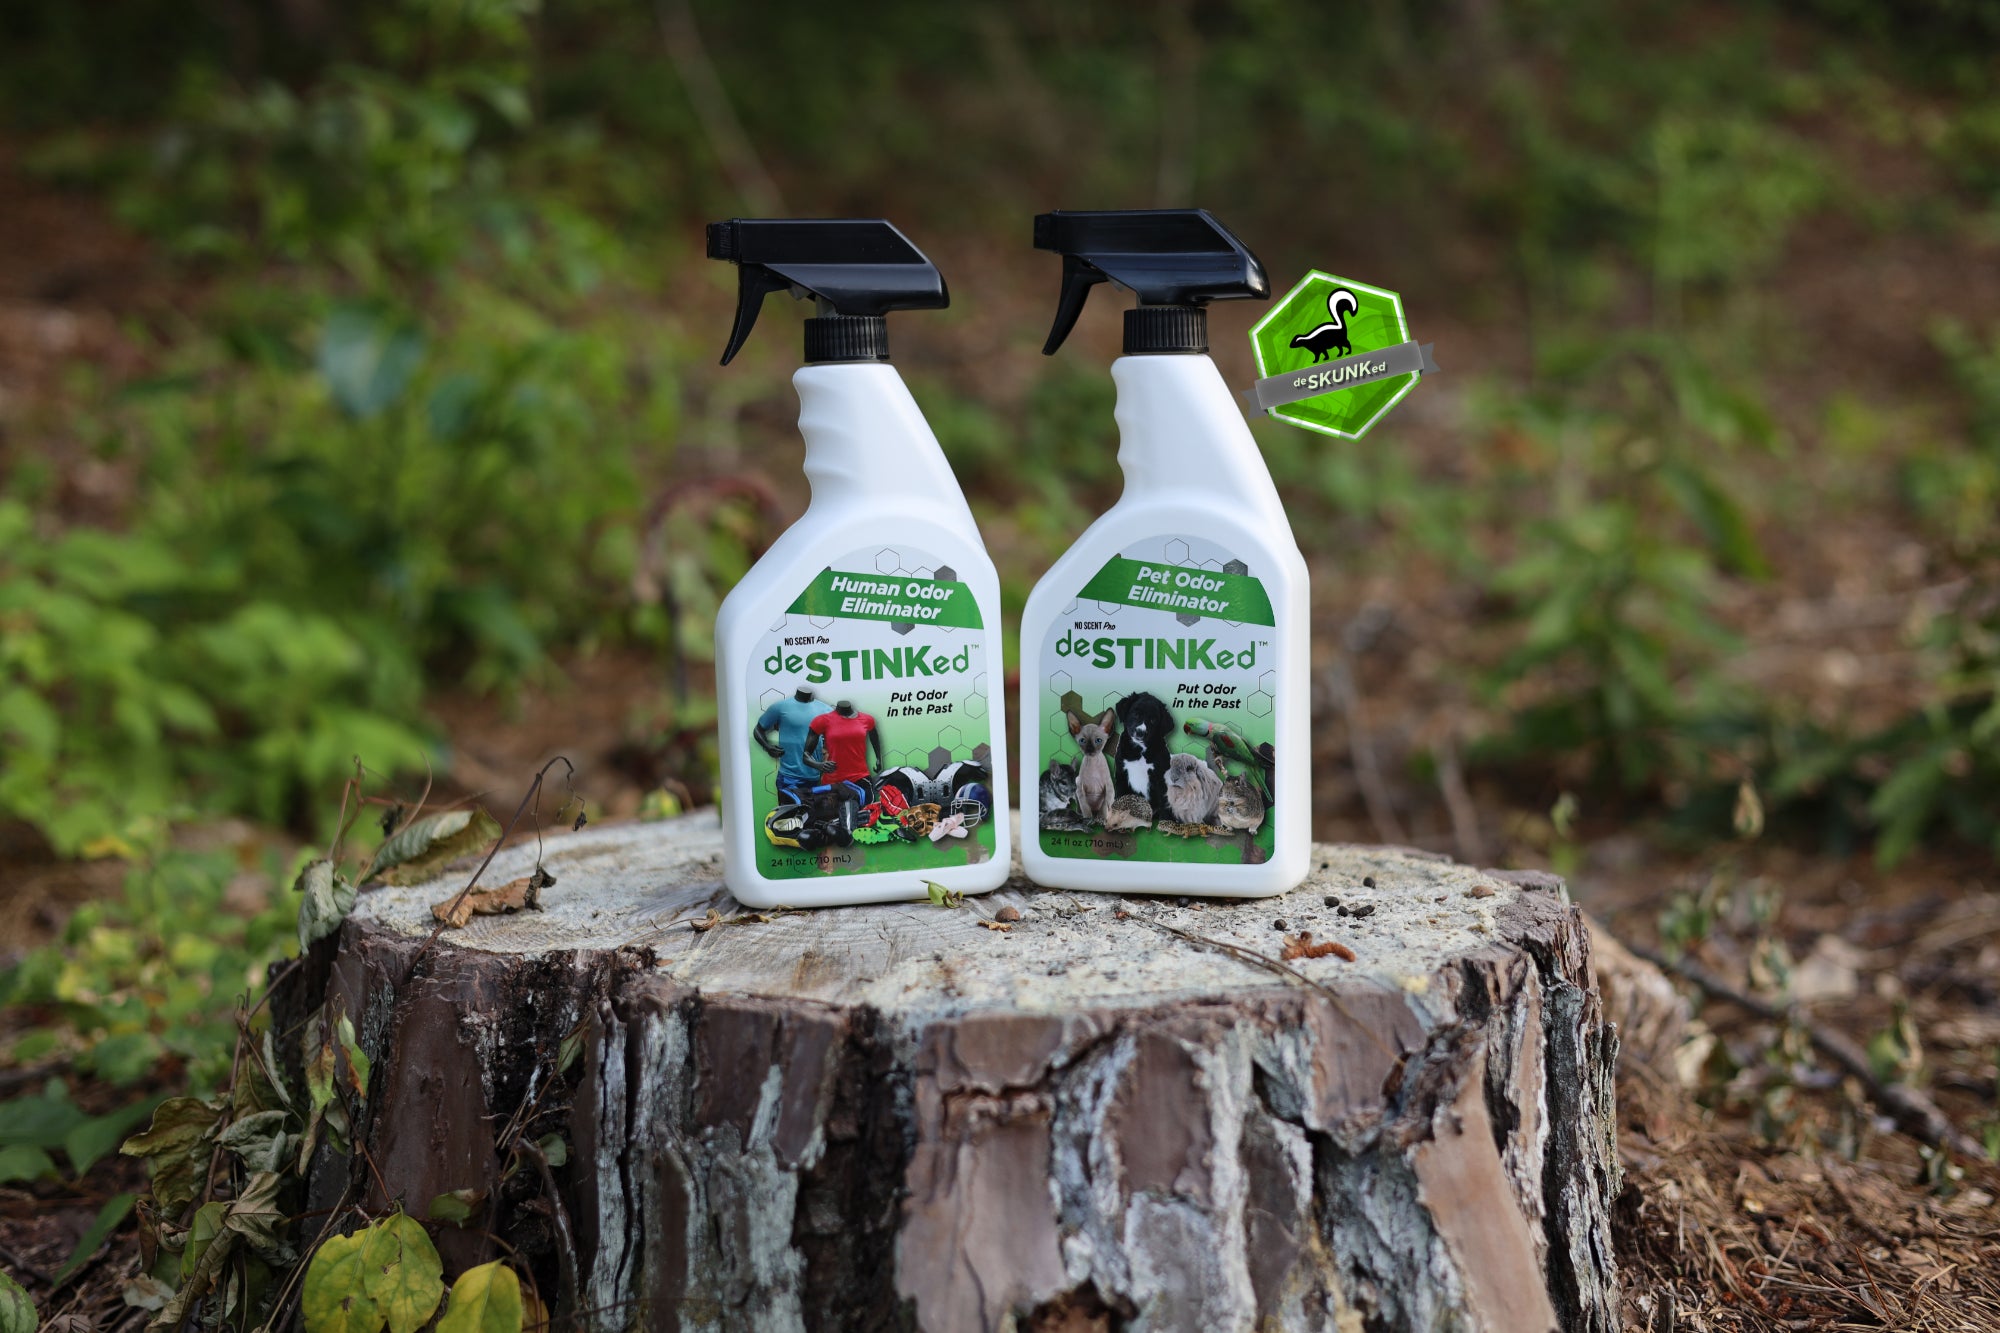 Bottles of deSTINKed Human Odor Eliminator and deSTINKed Pet Odor Eliminator sit on a tree stump.